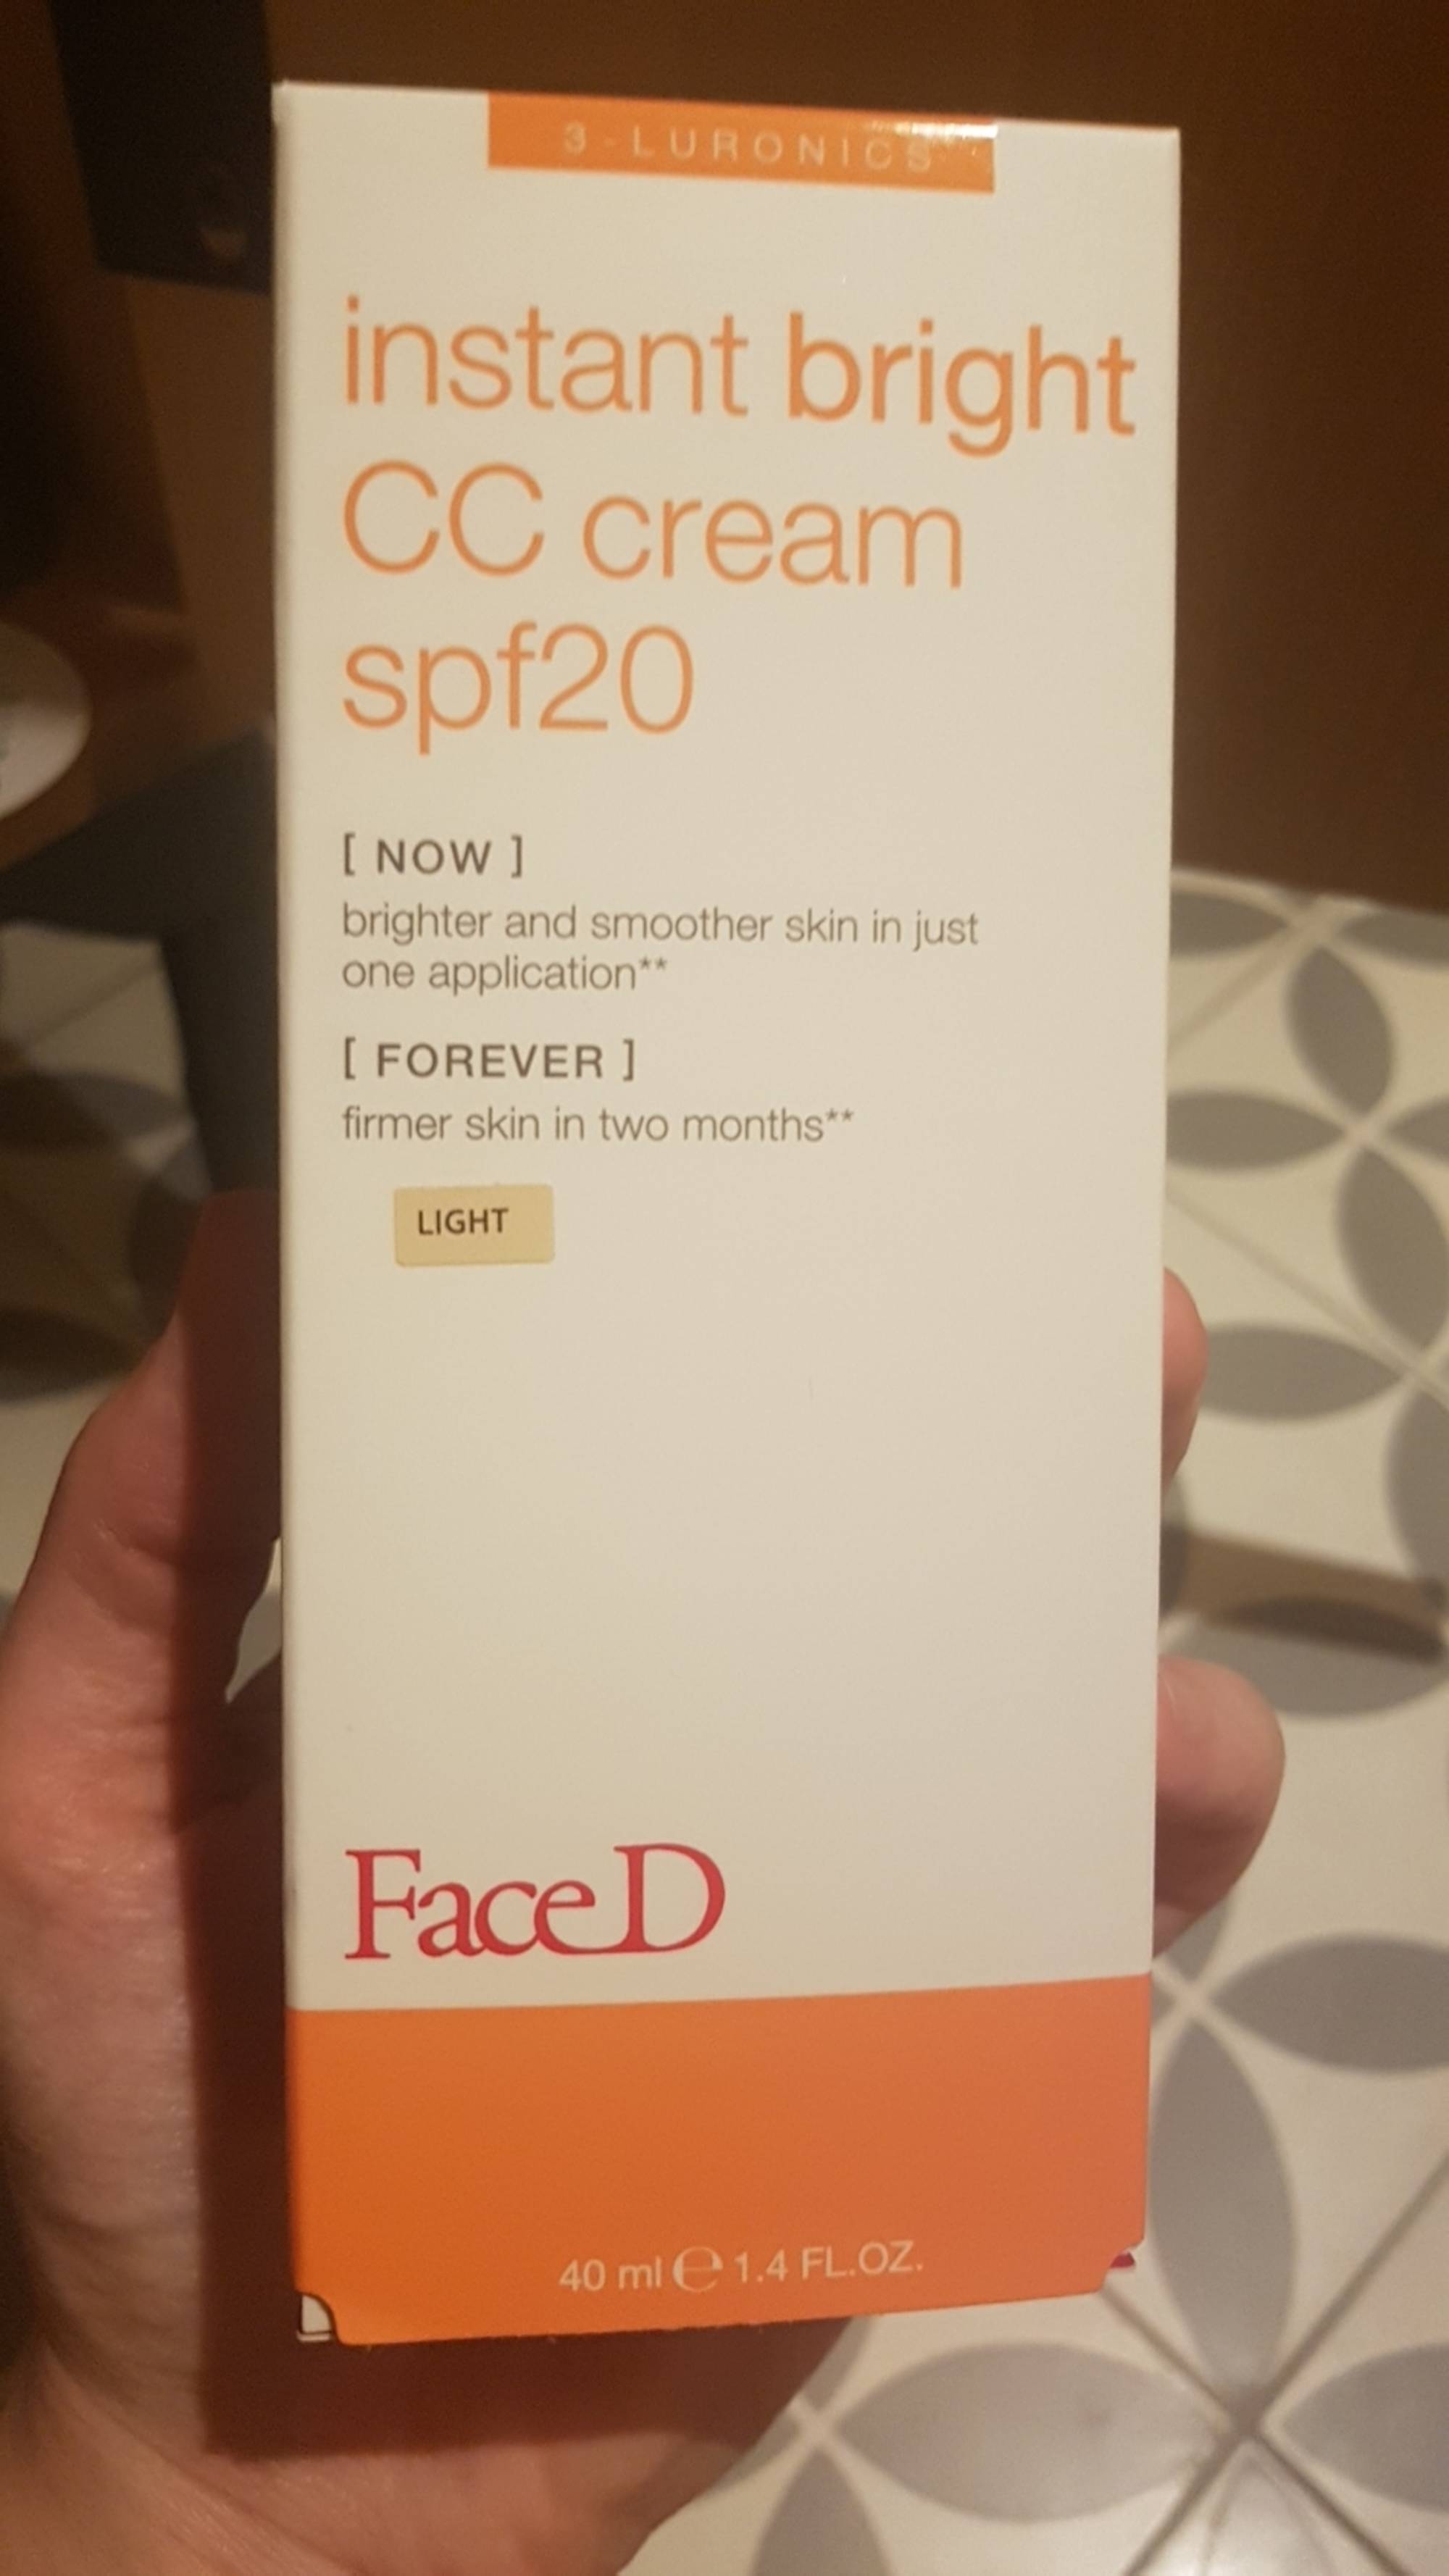 FACED - Instnt bright - CC cream SPF 20